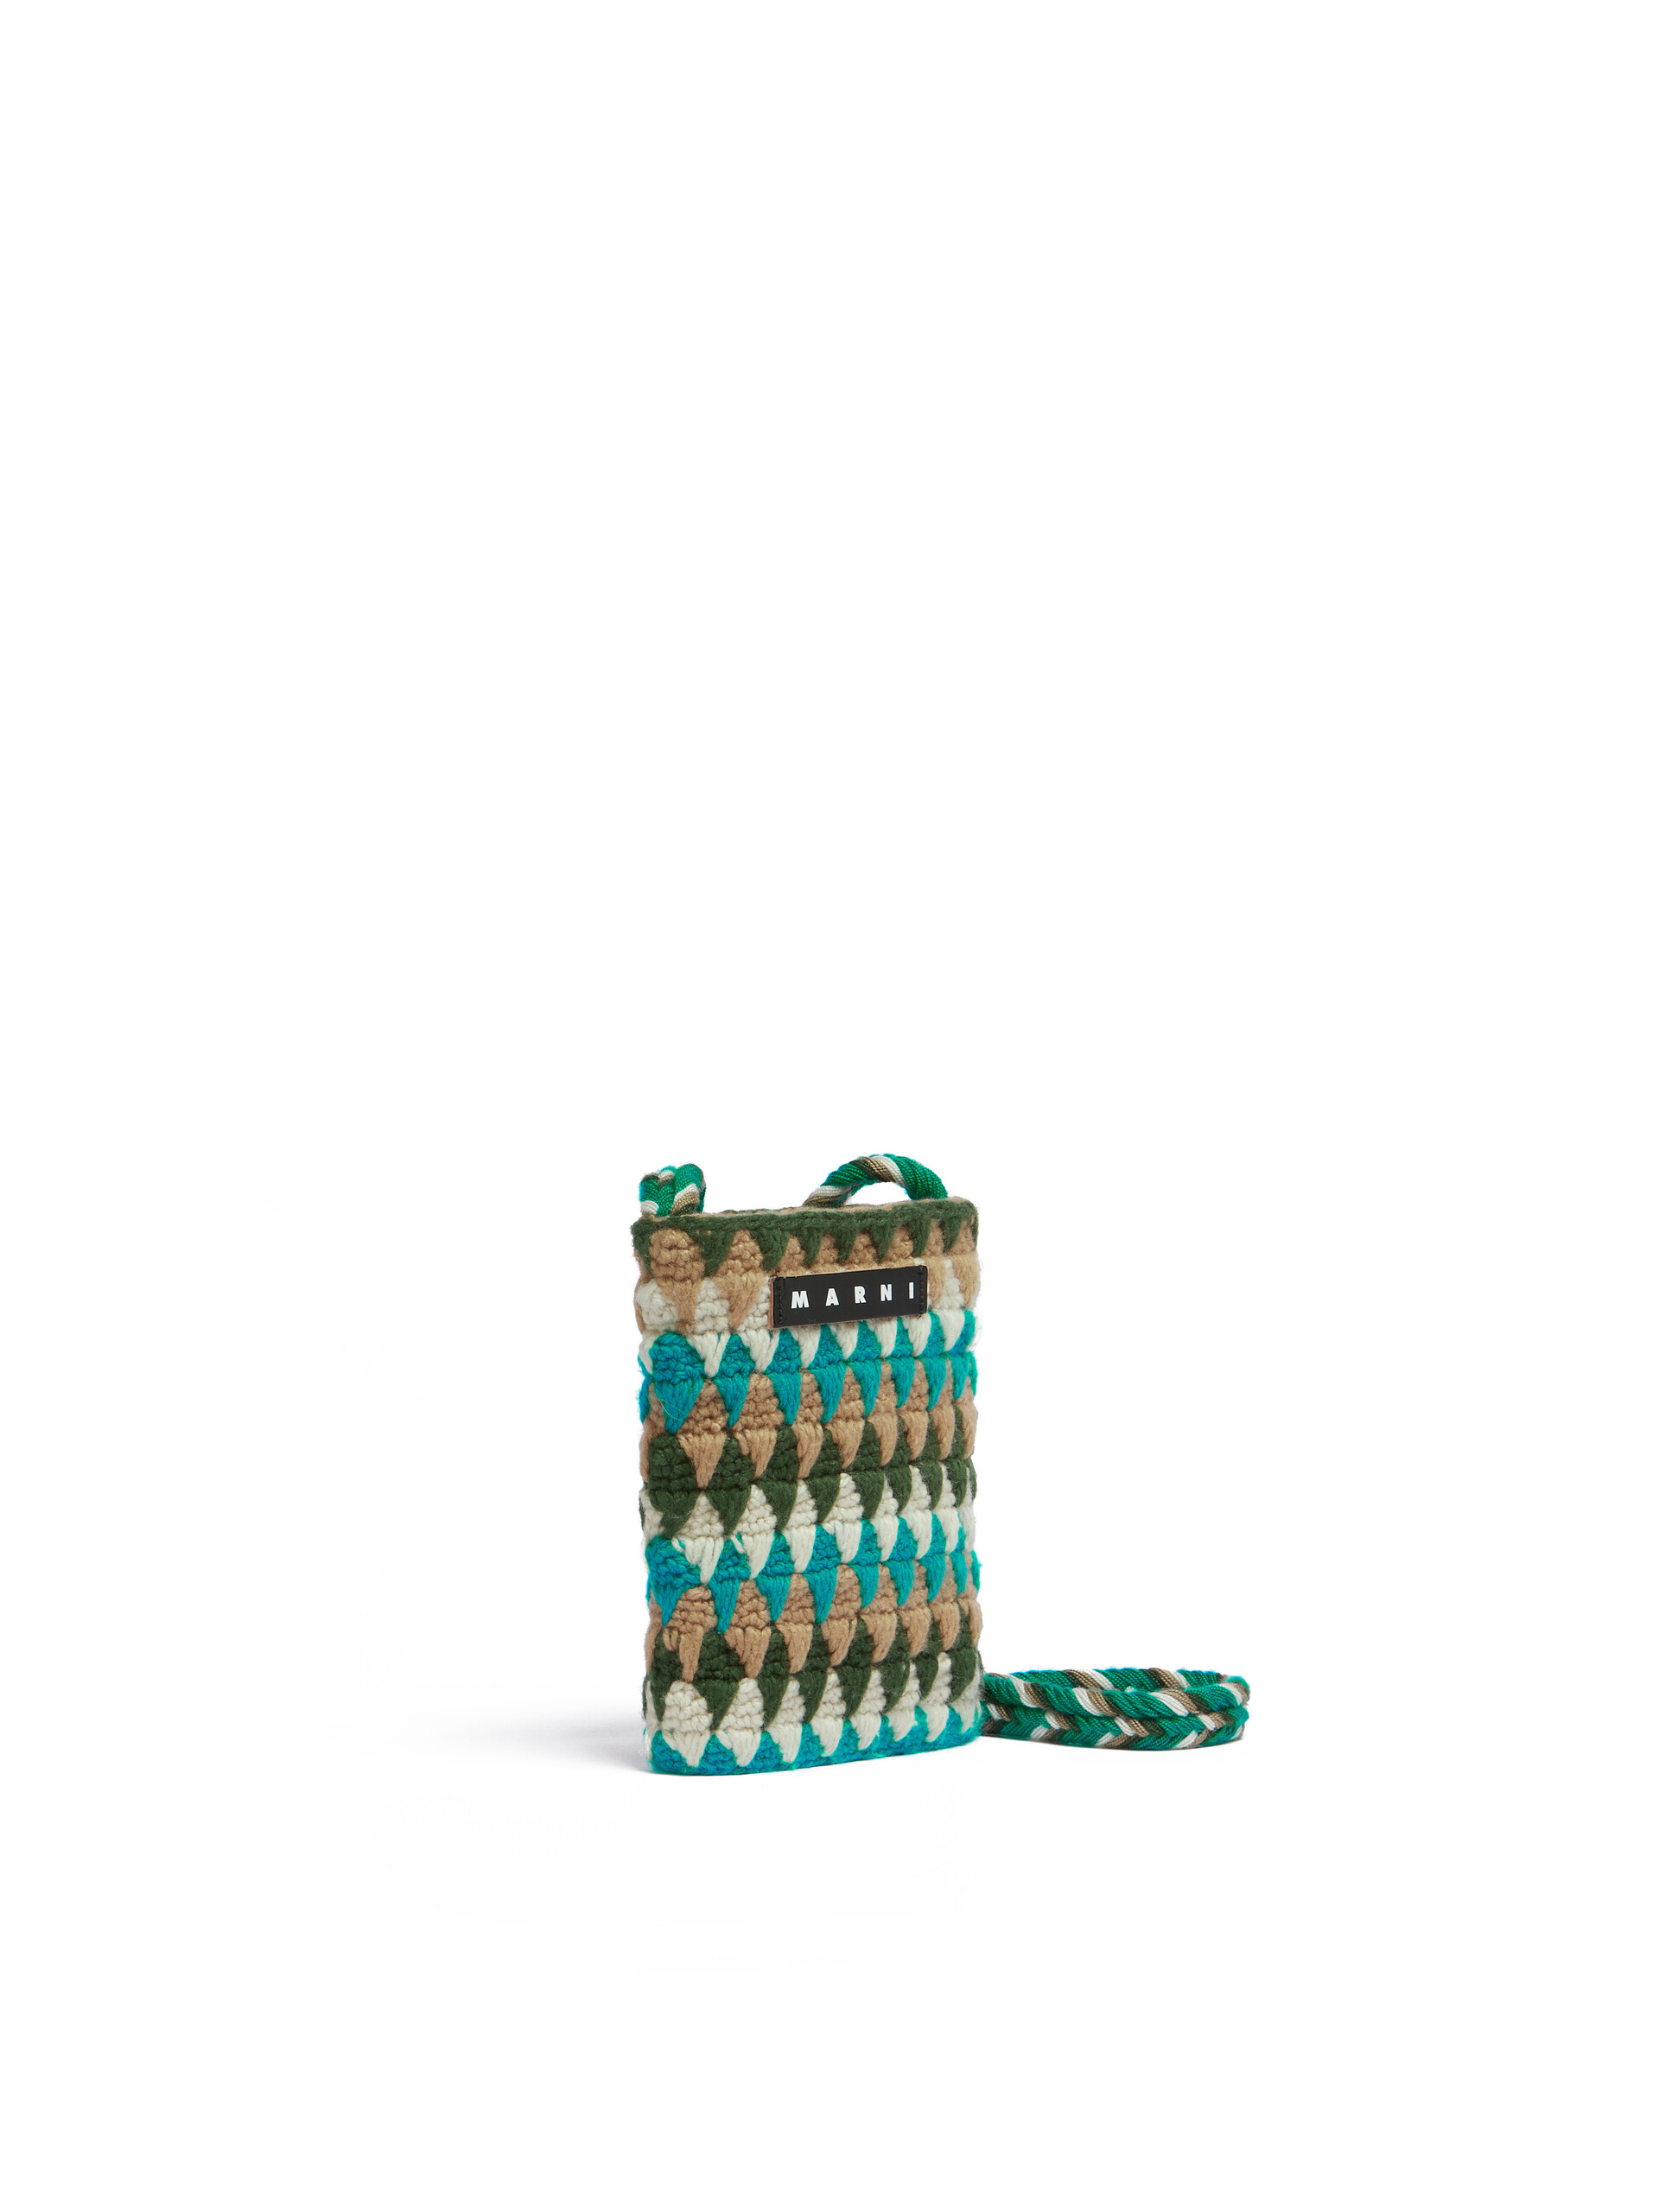 Sac porté épaule Marni Market Chessboard gris réalisé au crochet - Sacs cabas - Image 2